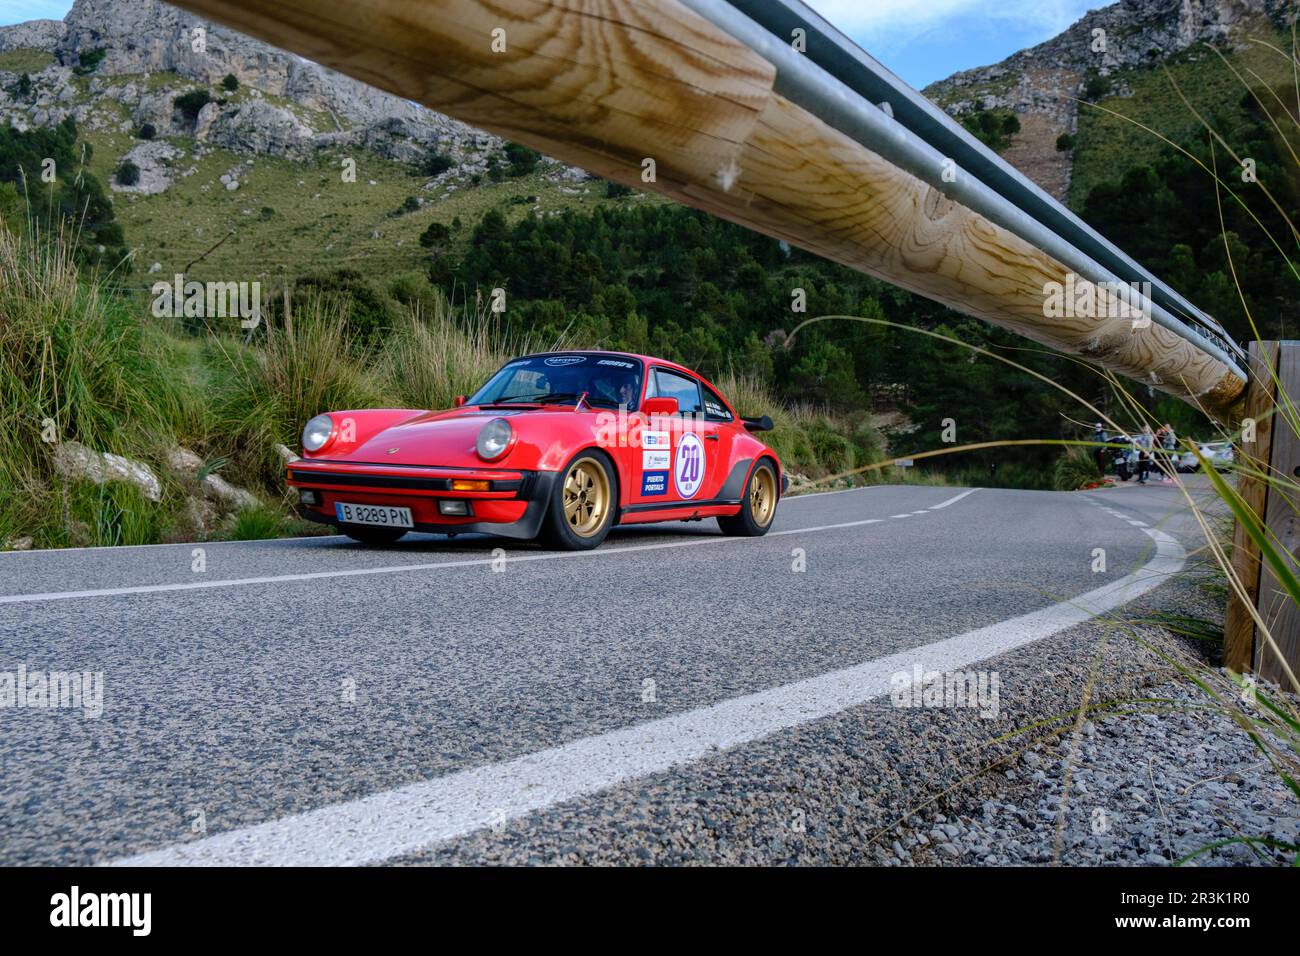 Porsche 911 Carrera, Rally Clásico Isla de Mallorca, carretera Puig Major, Mallorca, Balearic Islands, Spain. Stock Photo